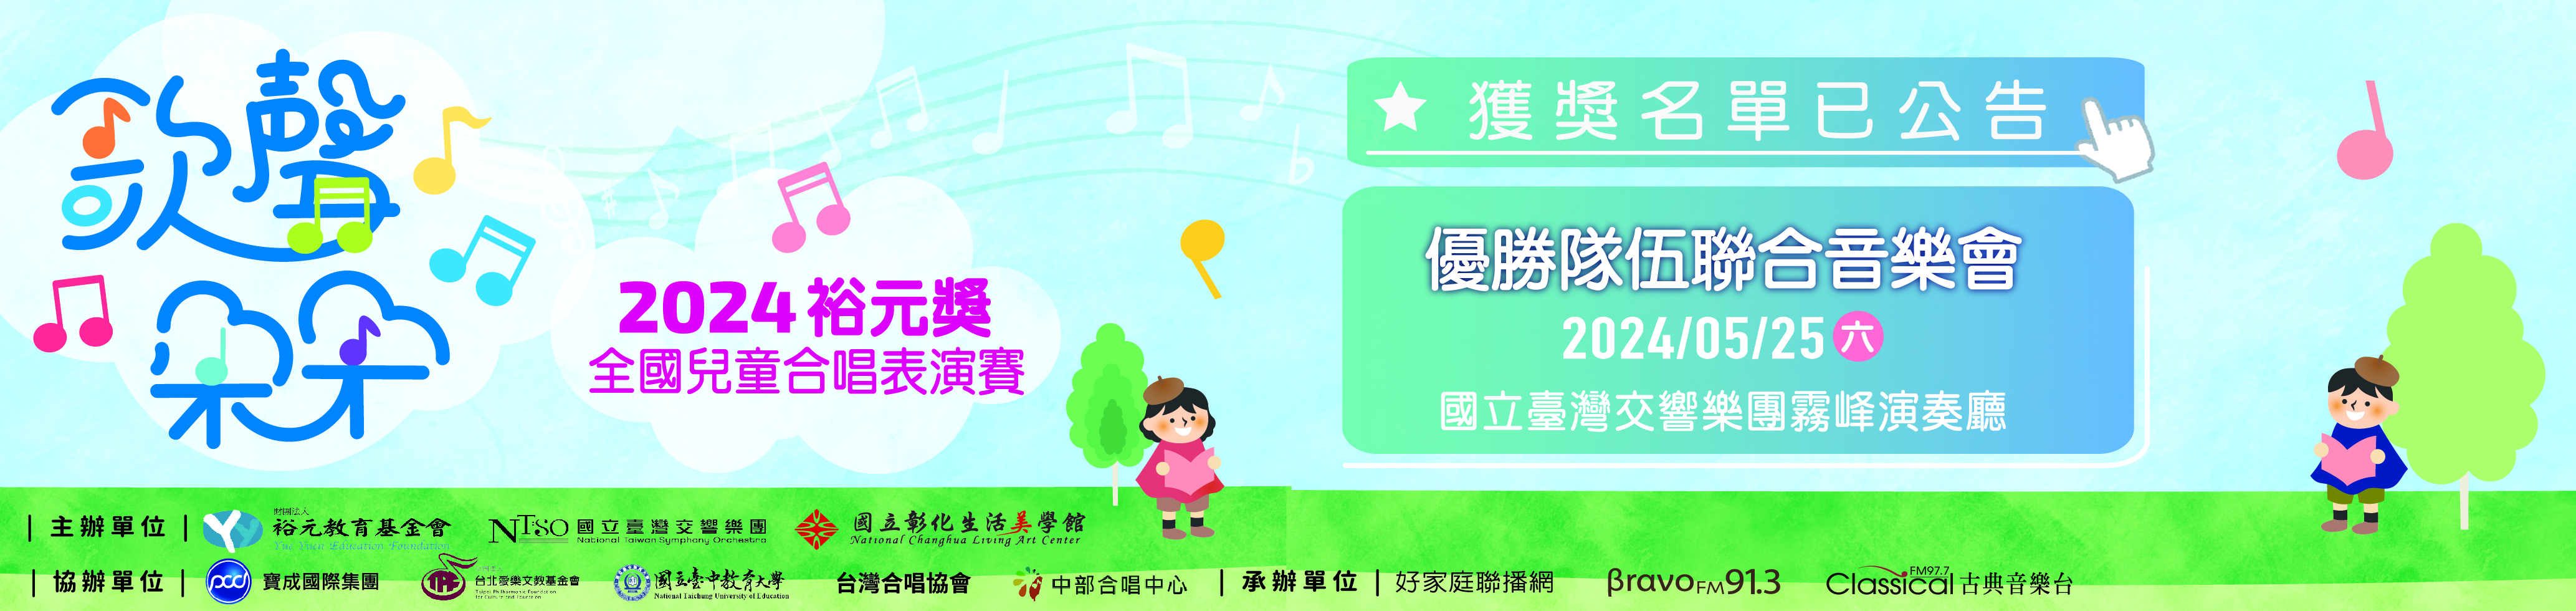 2024裕元獎-全國兒童合唱表演賽